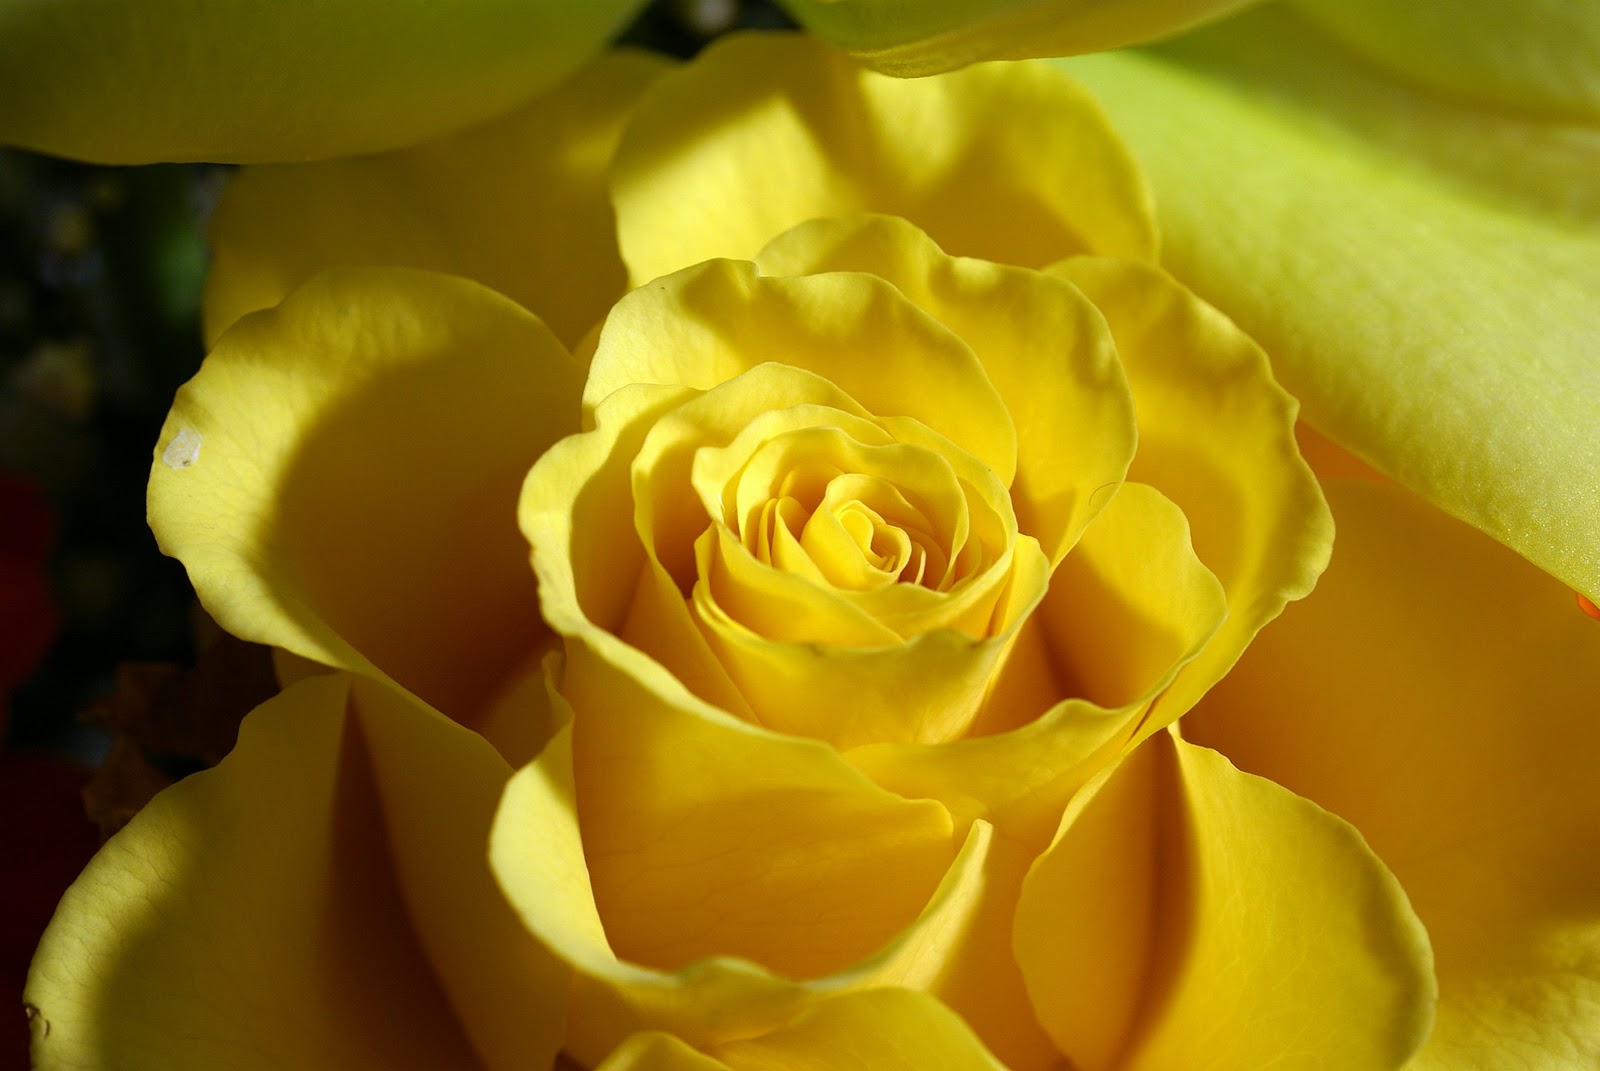 hübsche rosentapeten,julia kind stand auf,gartenrosen,blume,gelb,blütenblatt